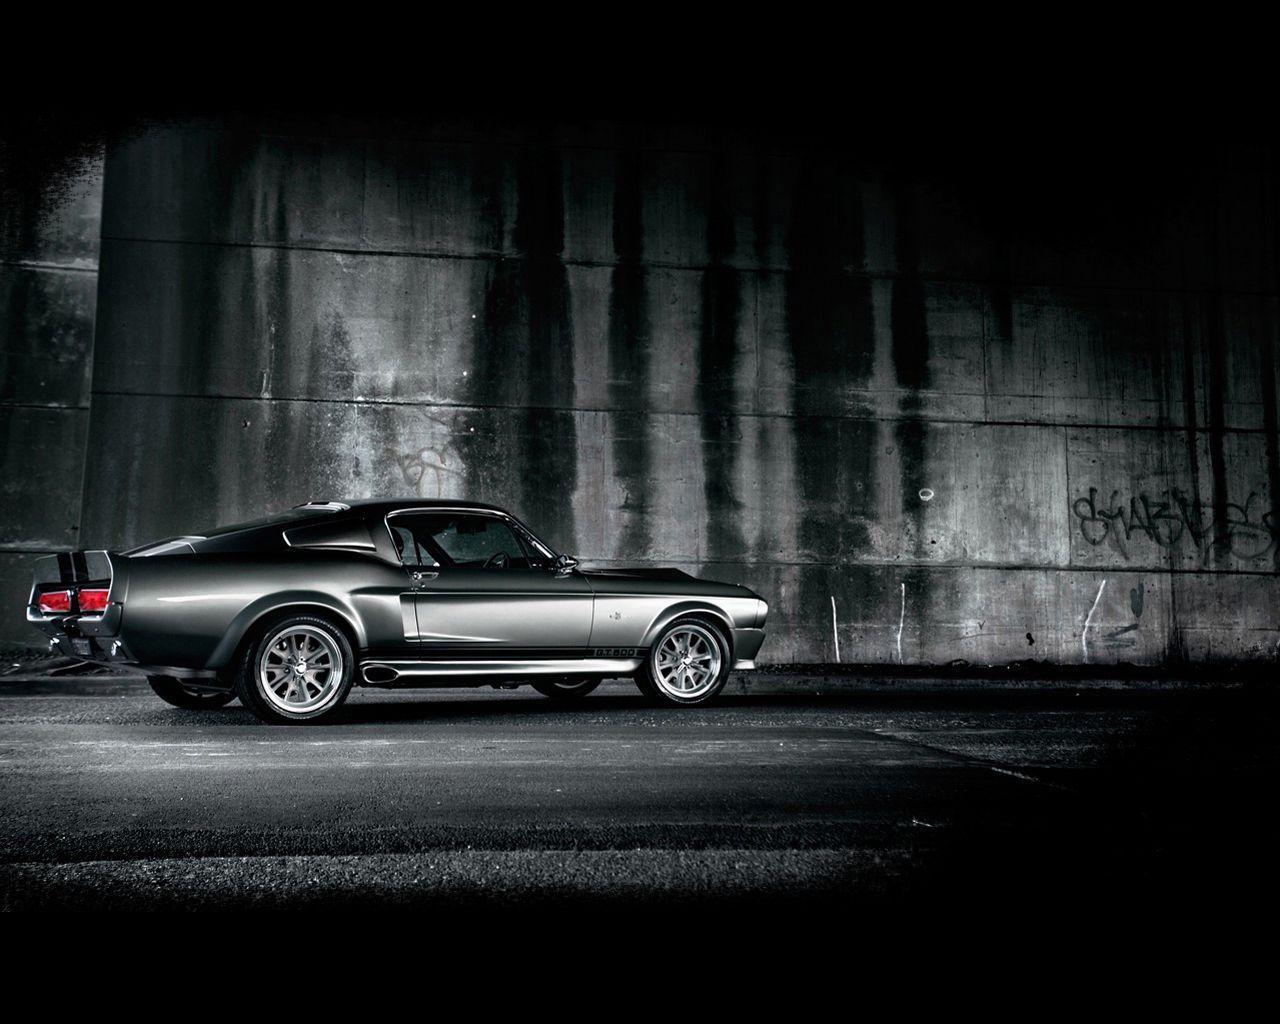 Ford Mustang wallpaper. Ford Mustang wallpaper